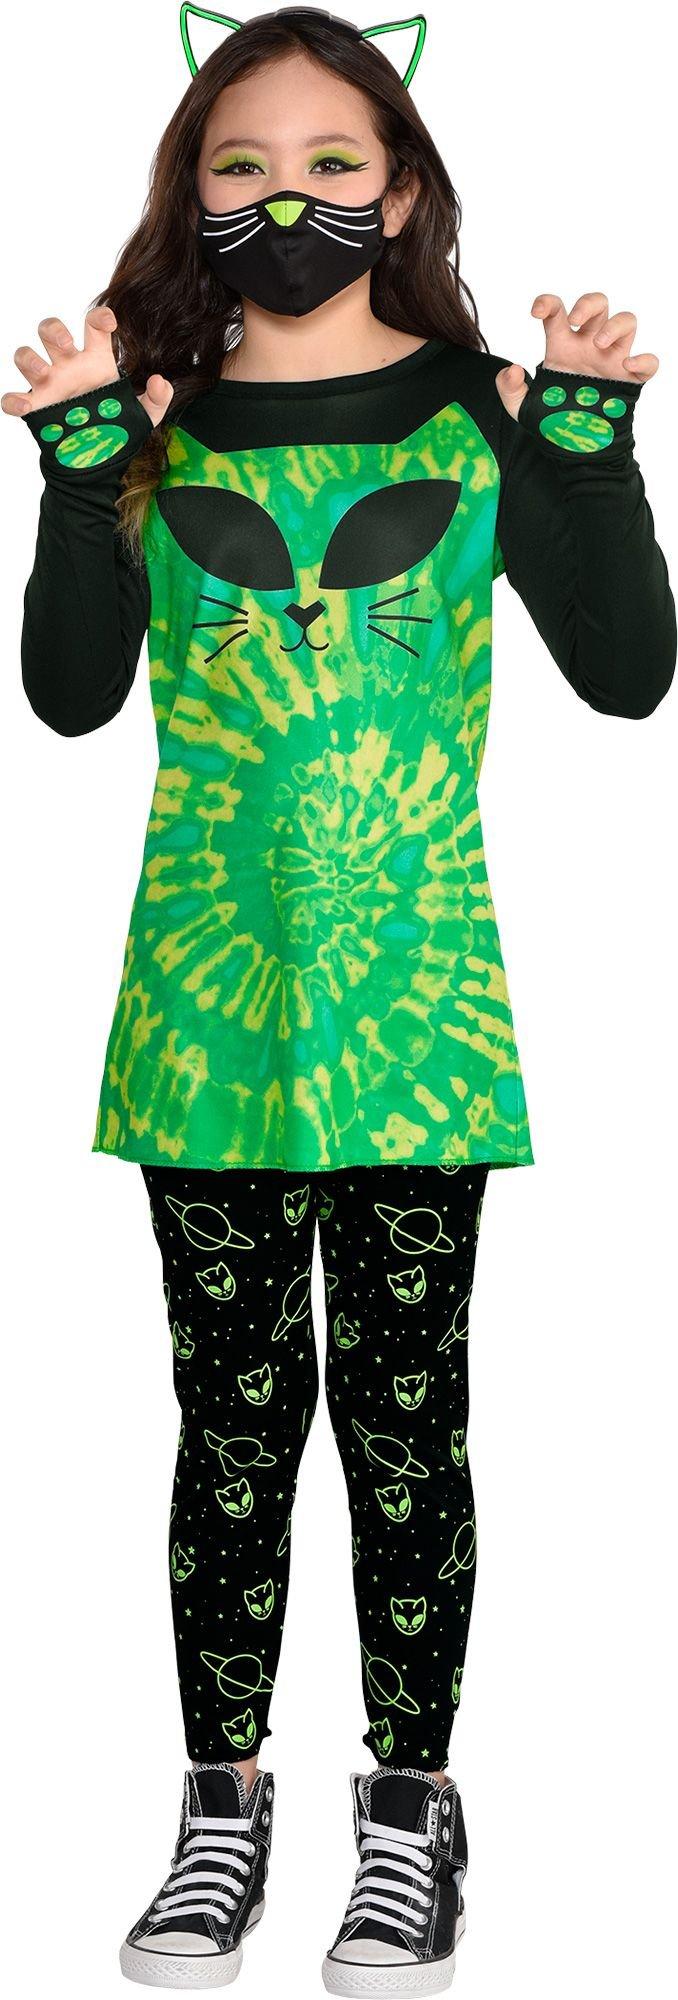 Kids' Cosmic Kitty Costume